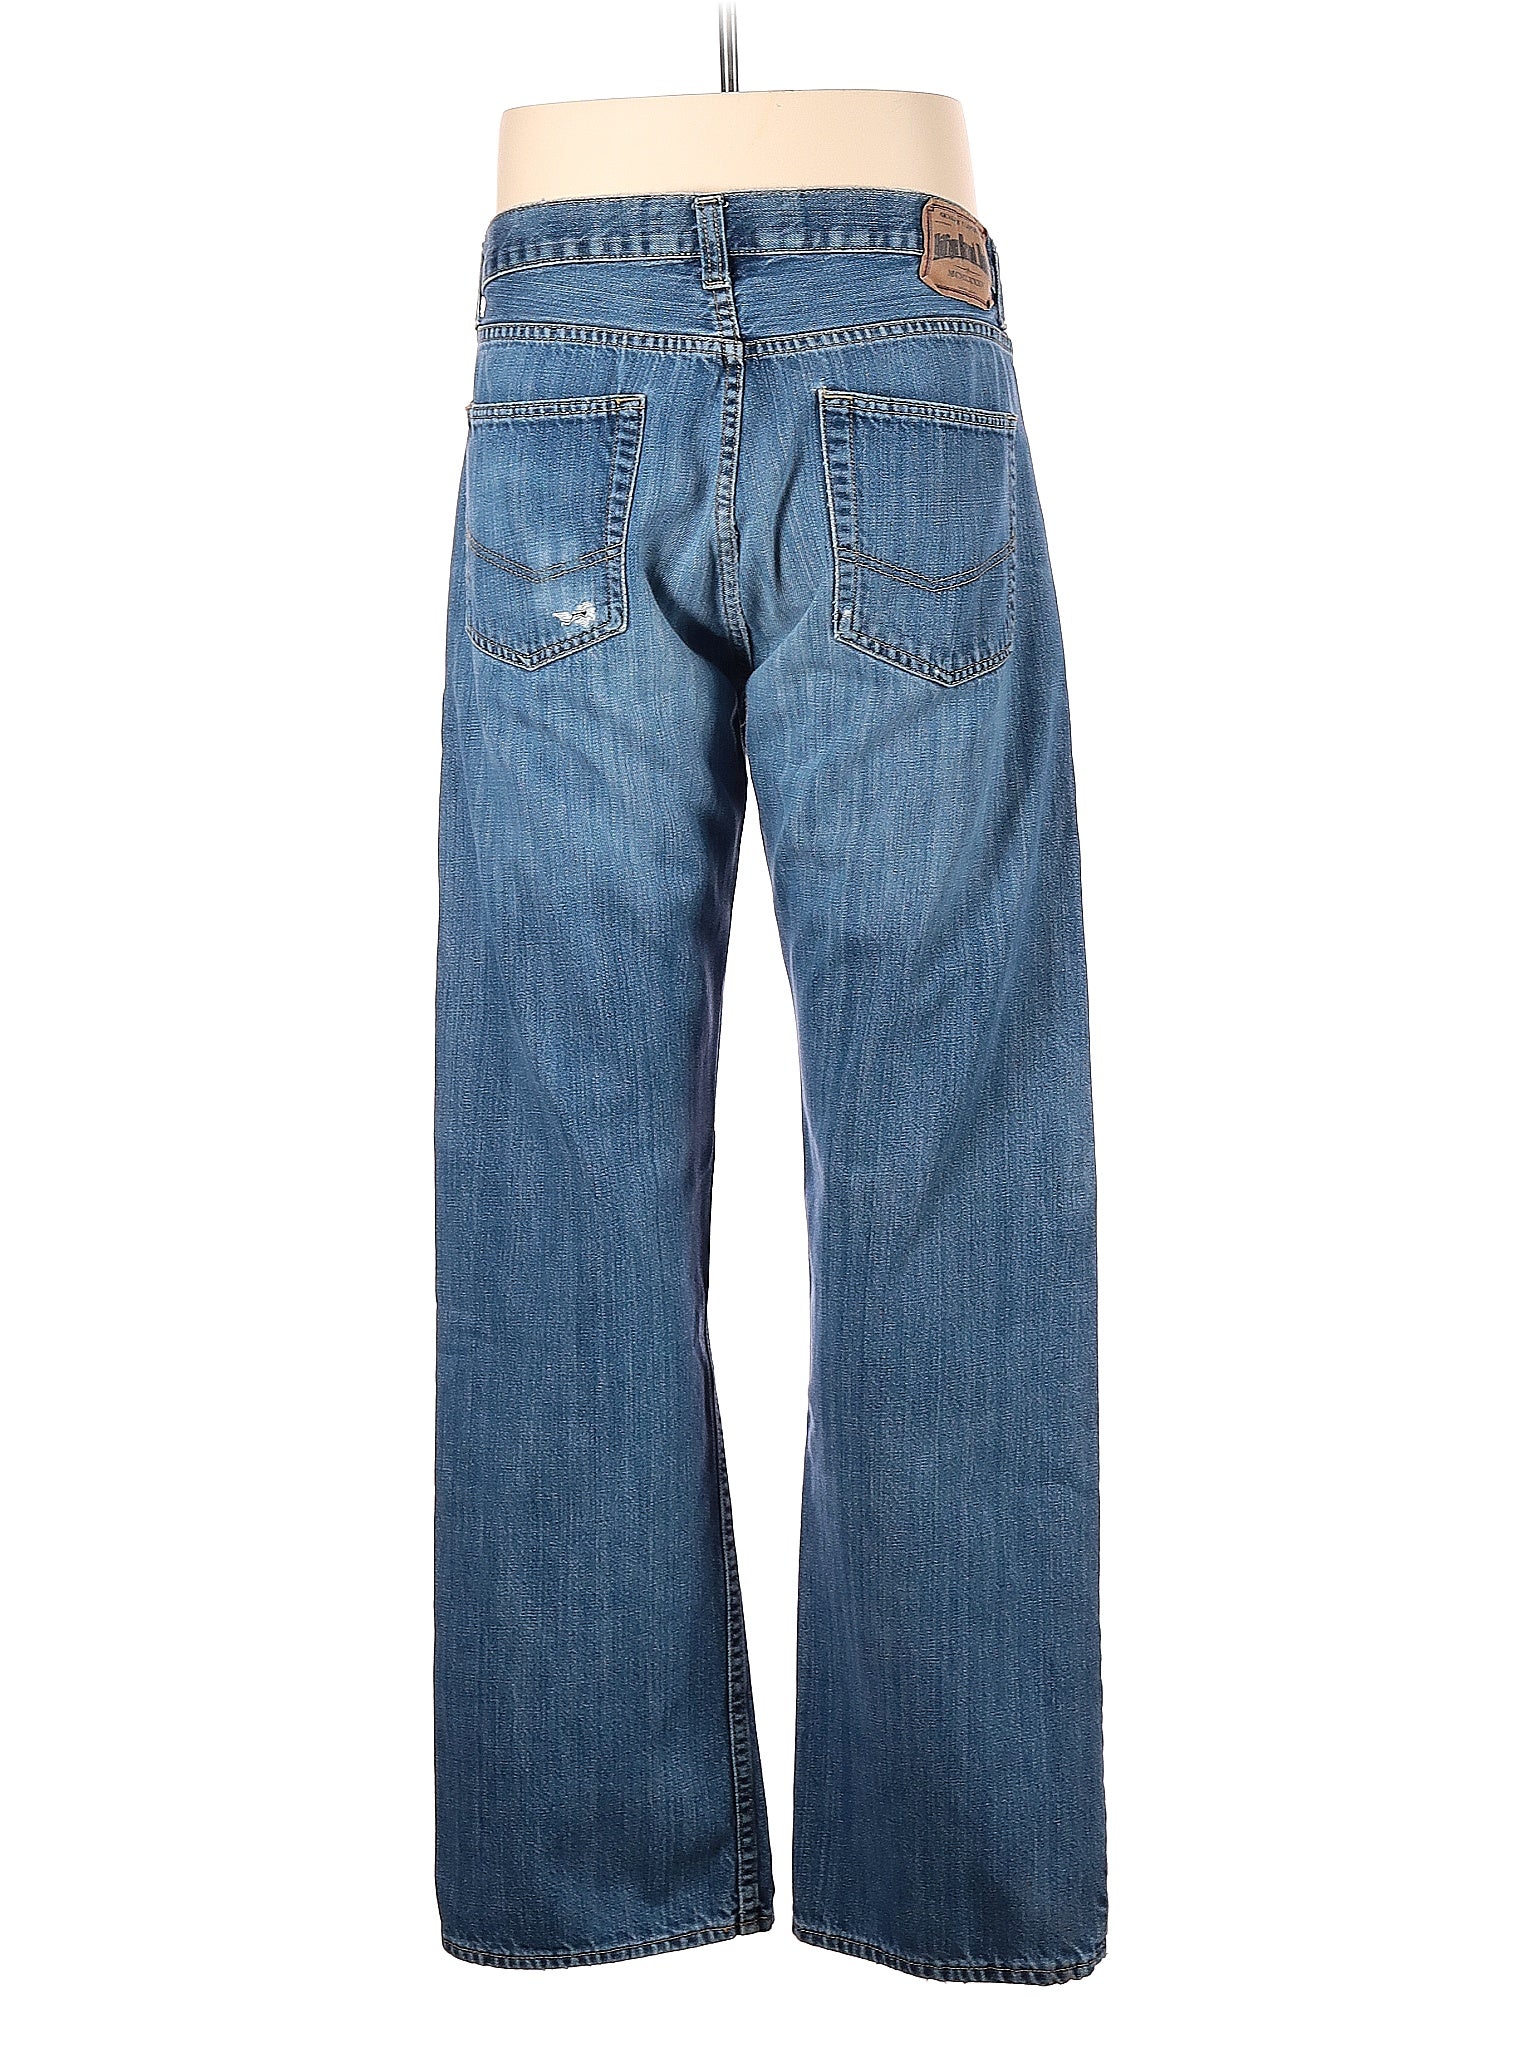 Jeans size - 36 (W36 L34)